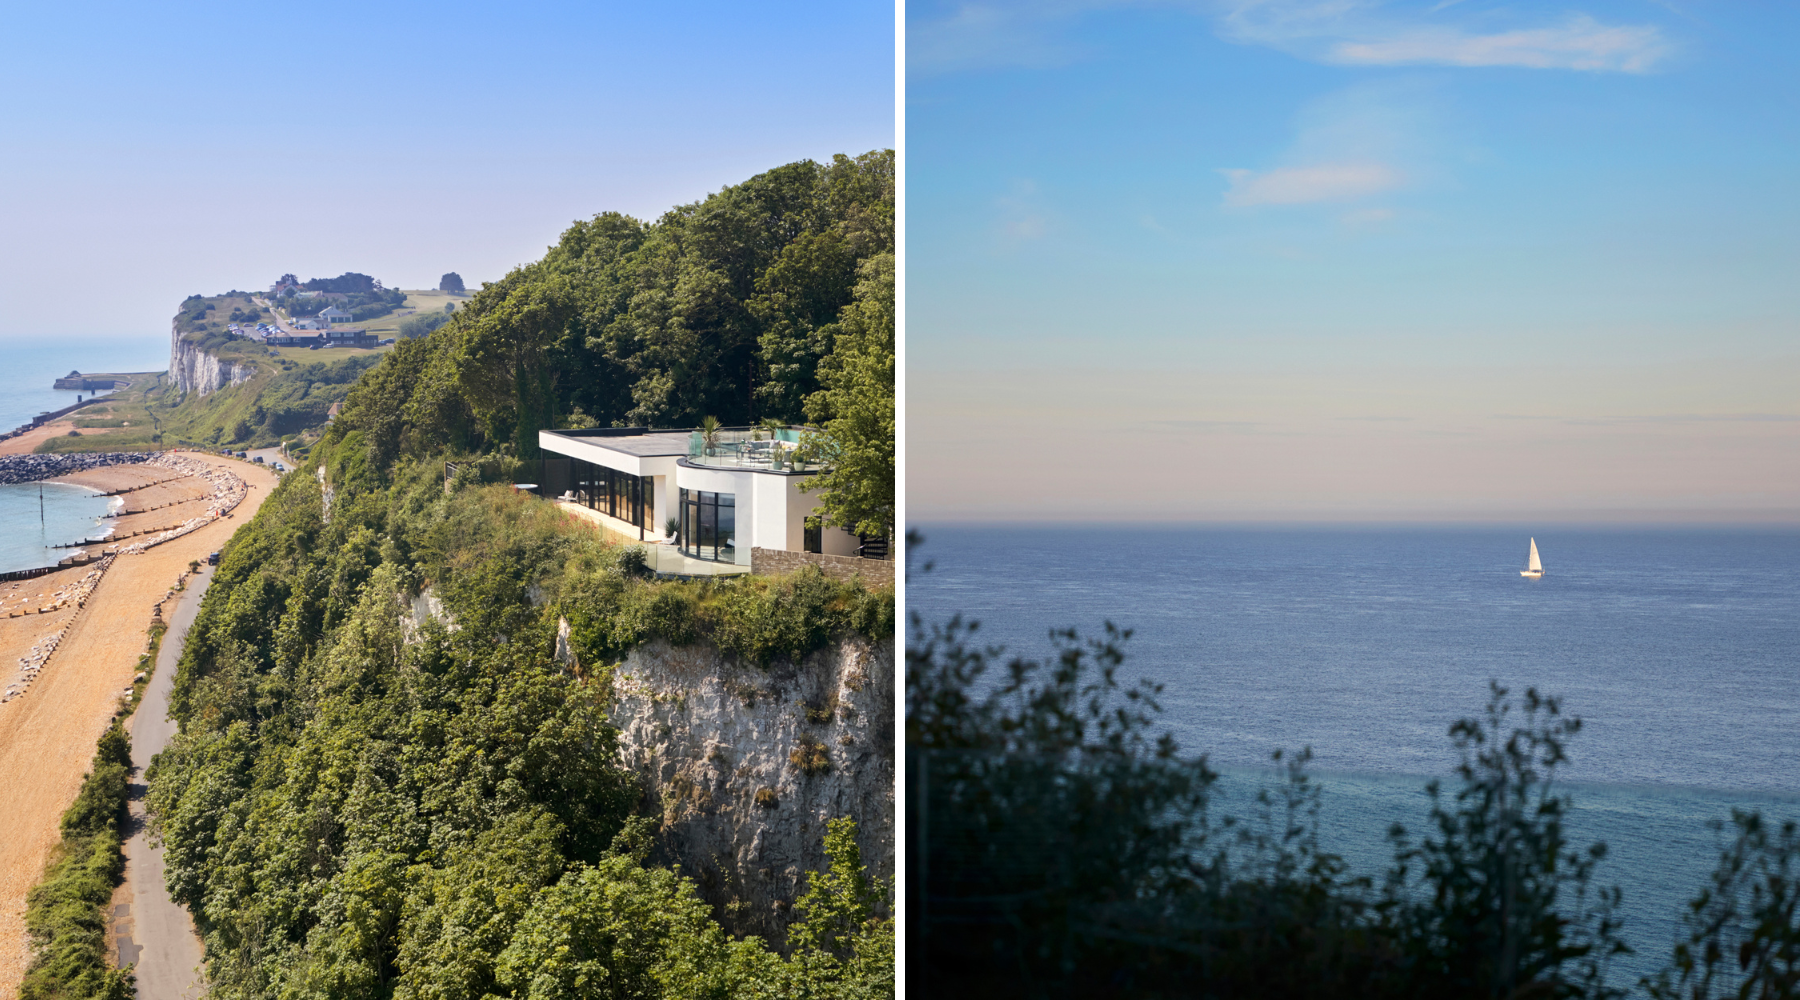 Omaze Million Pound House Draw - Kent House sea views